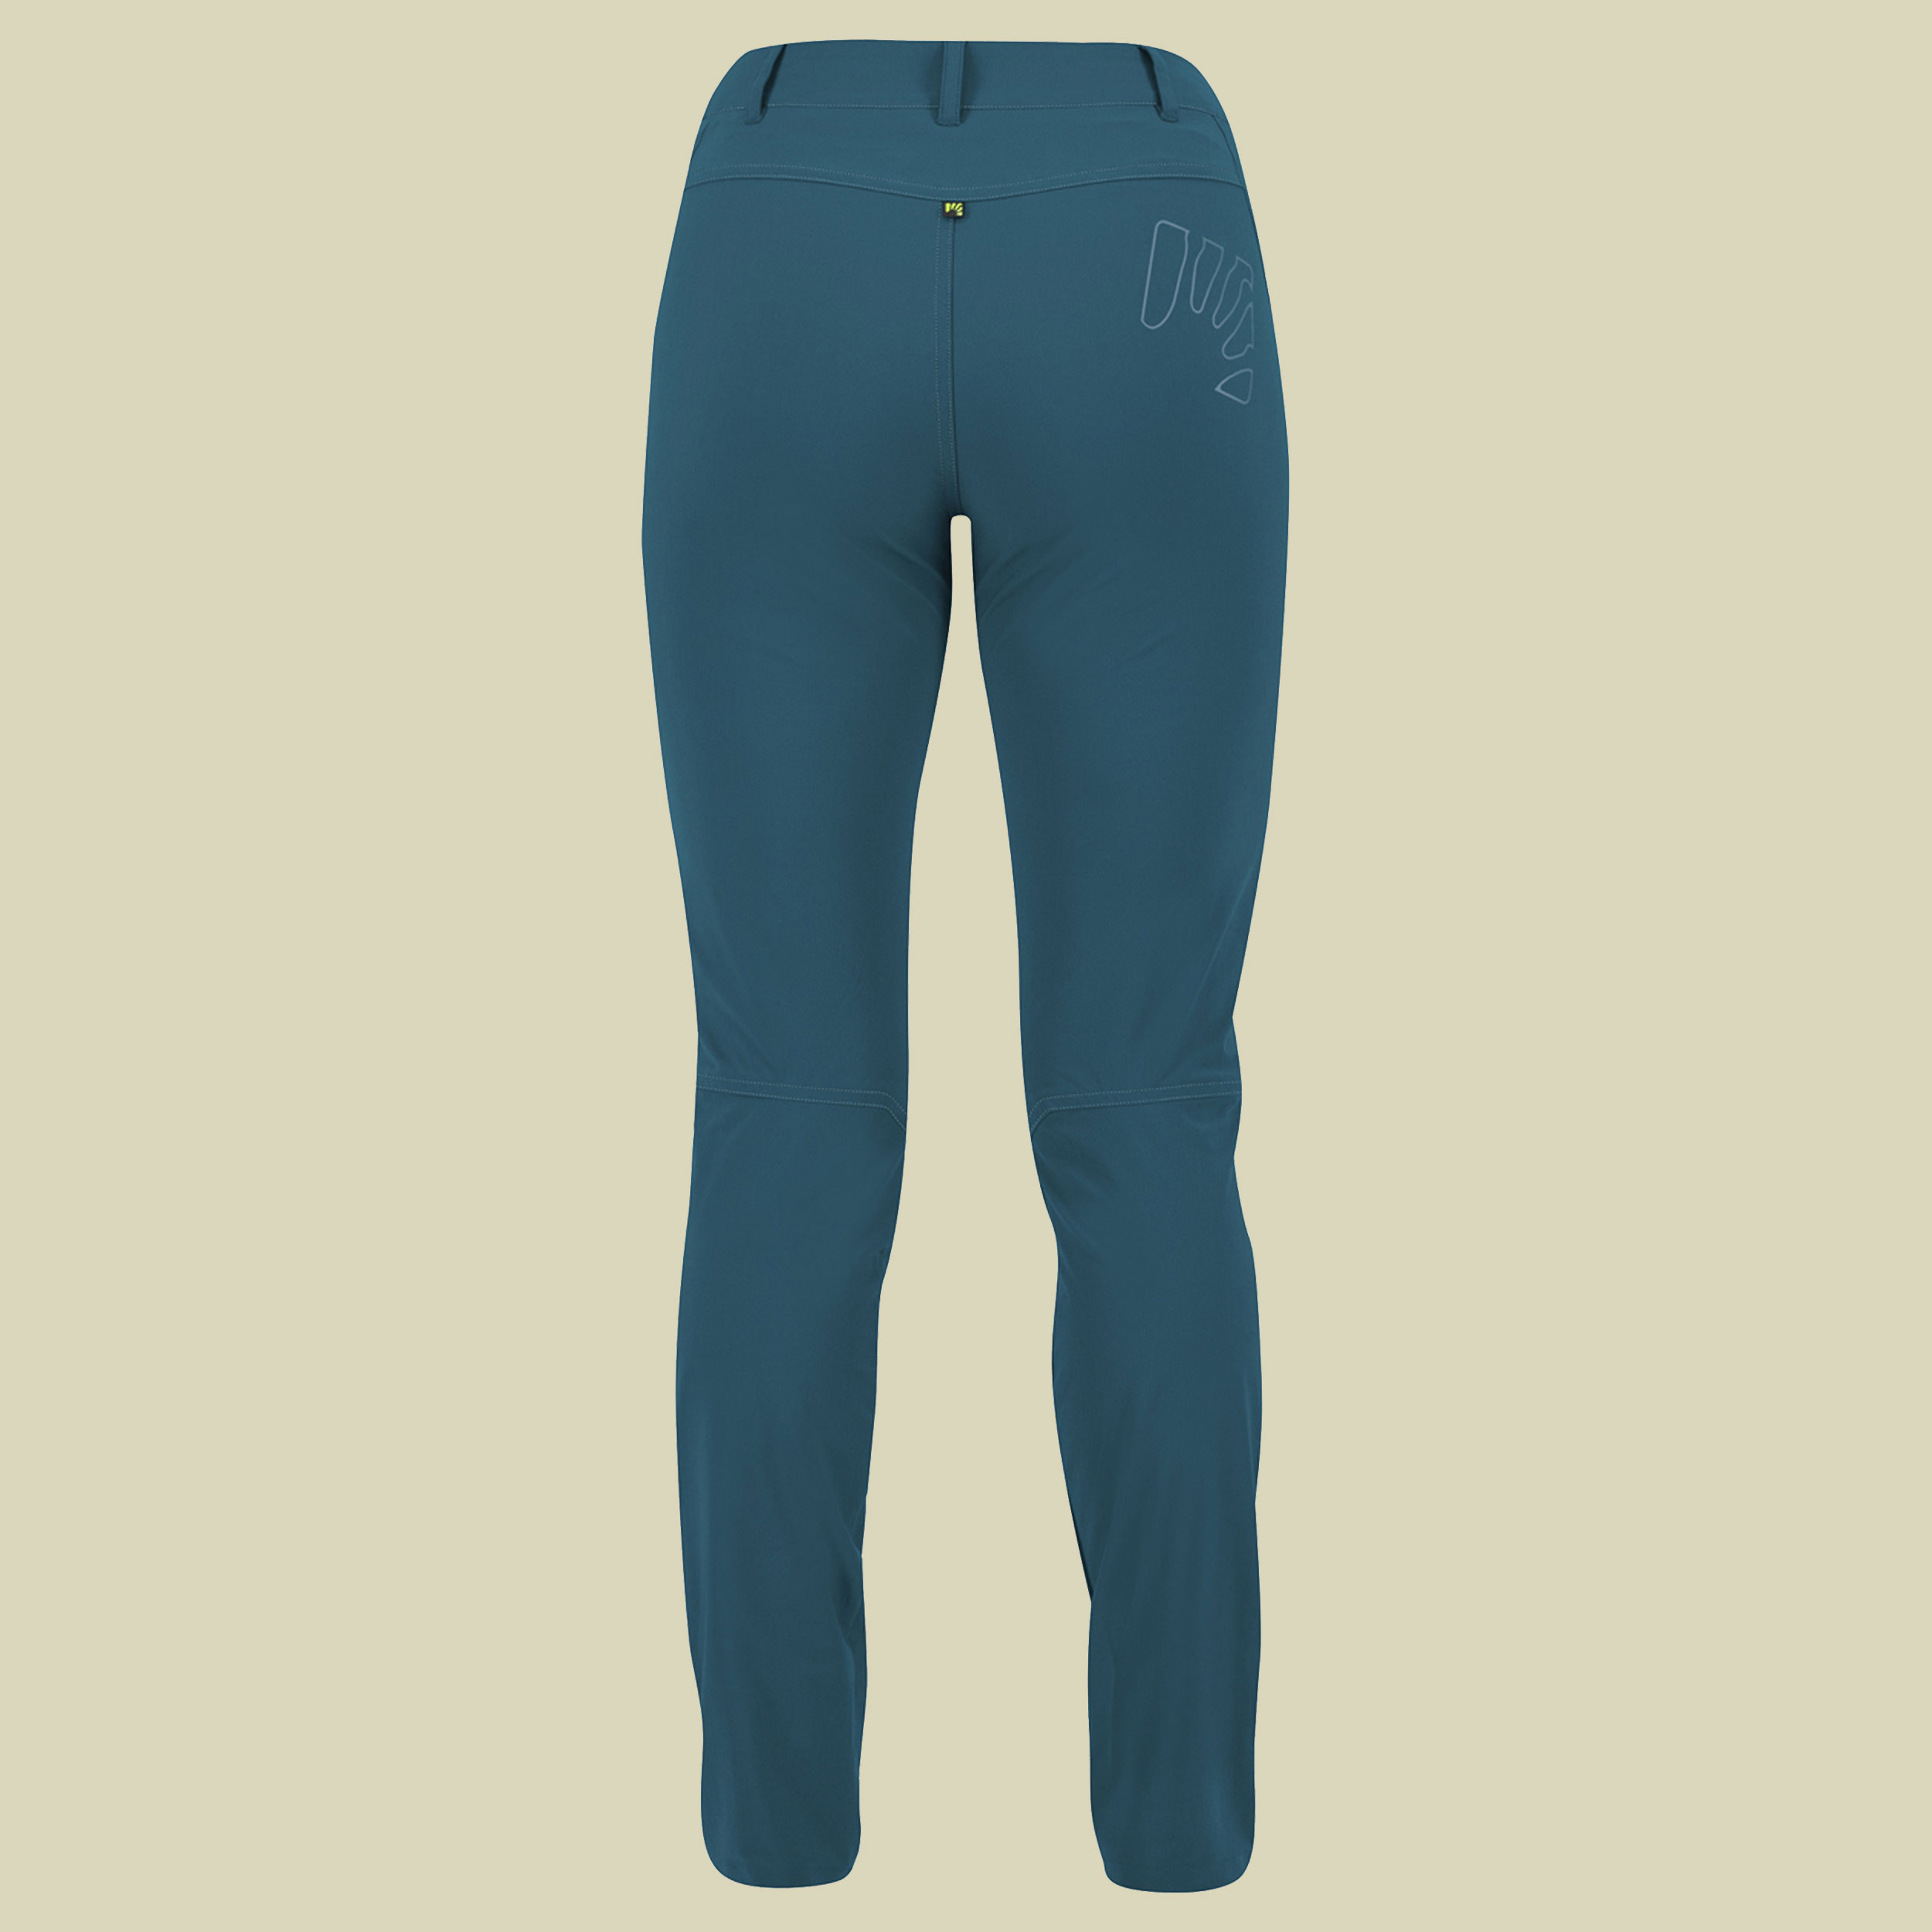 Fantasia Evo Pant Women Größe 42 (48 Herstellergr.) Farbe corsair/adriatic blue